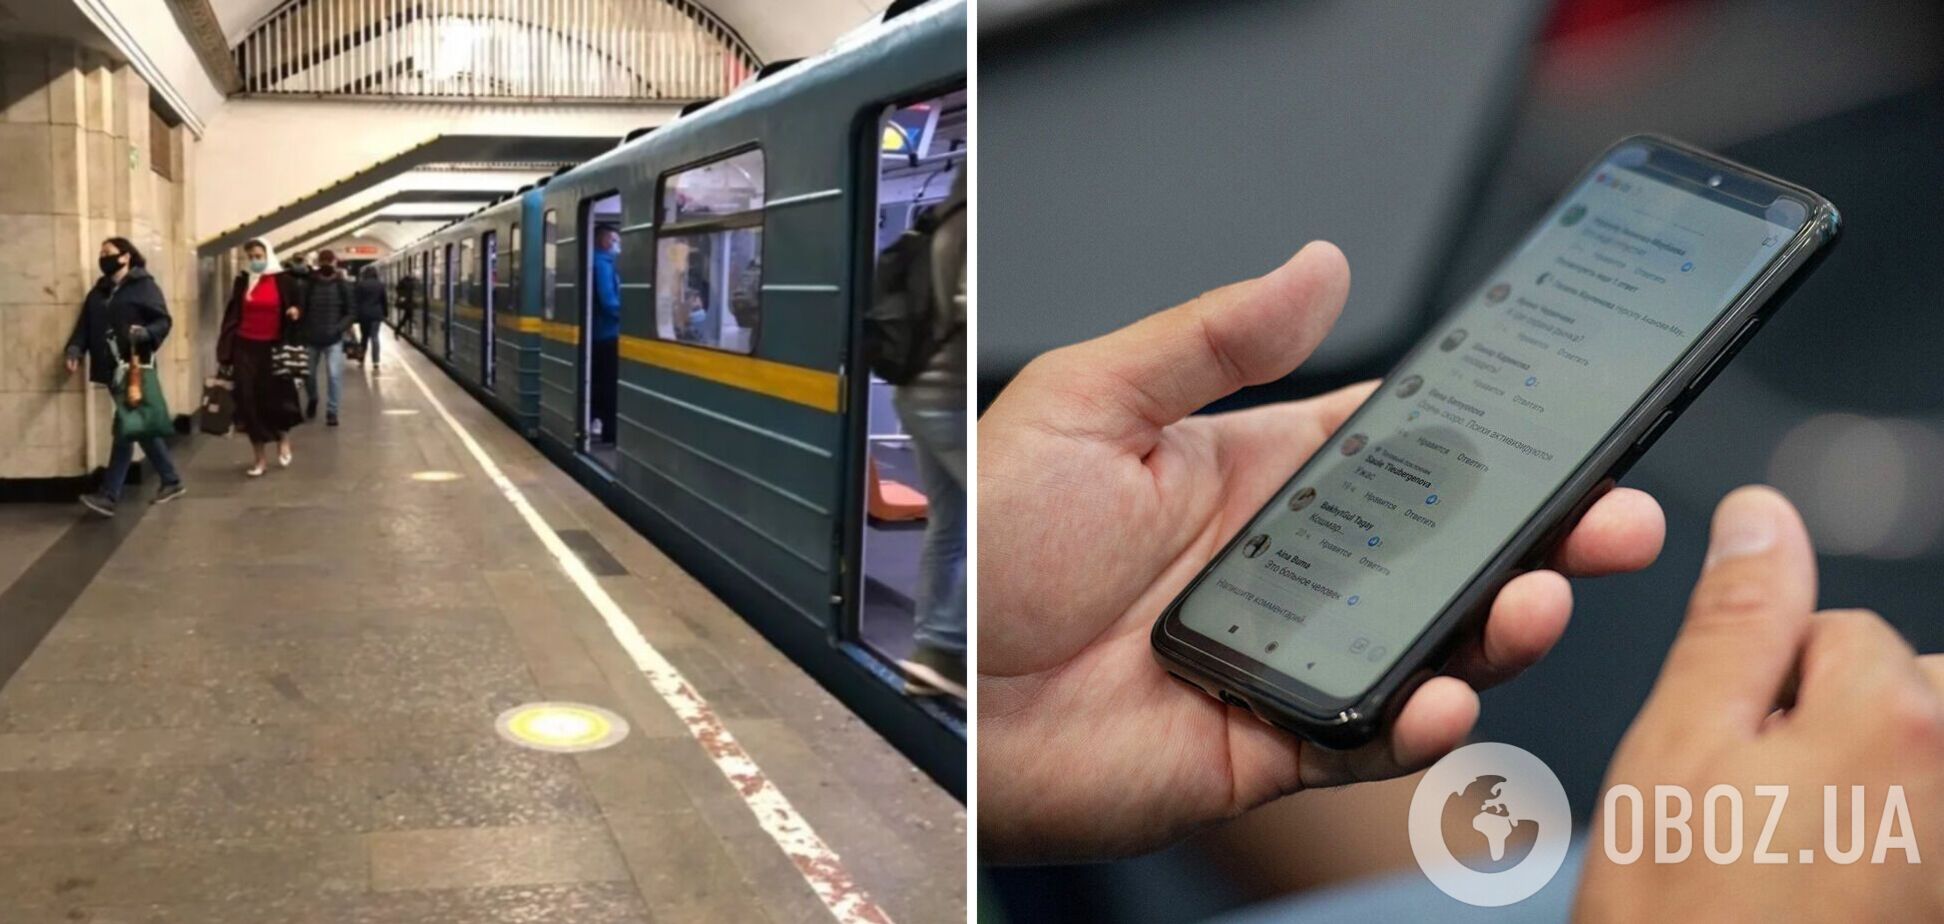 Вів стрім і чіплявся до працівників метро: у Києві фанат Путіна влаштував істерику і мало не відхопив від пасажирів. Фото